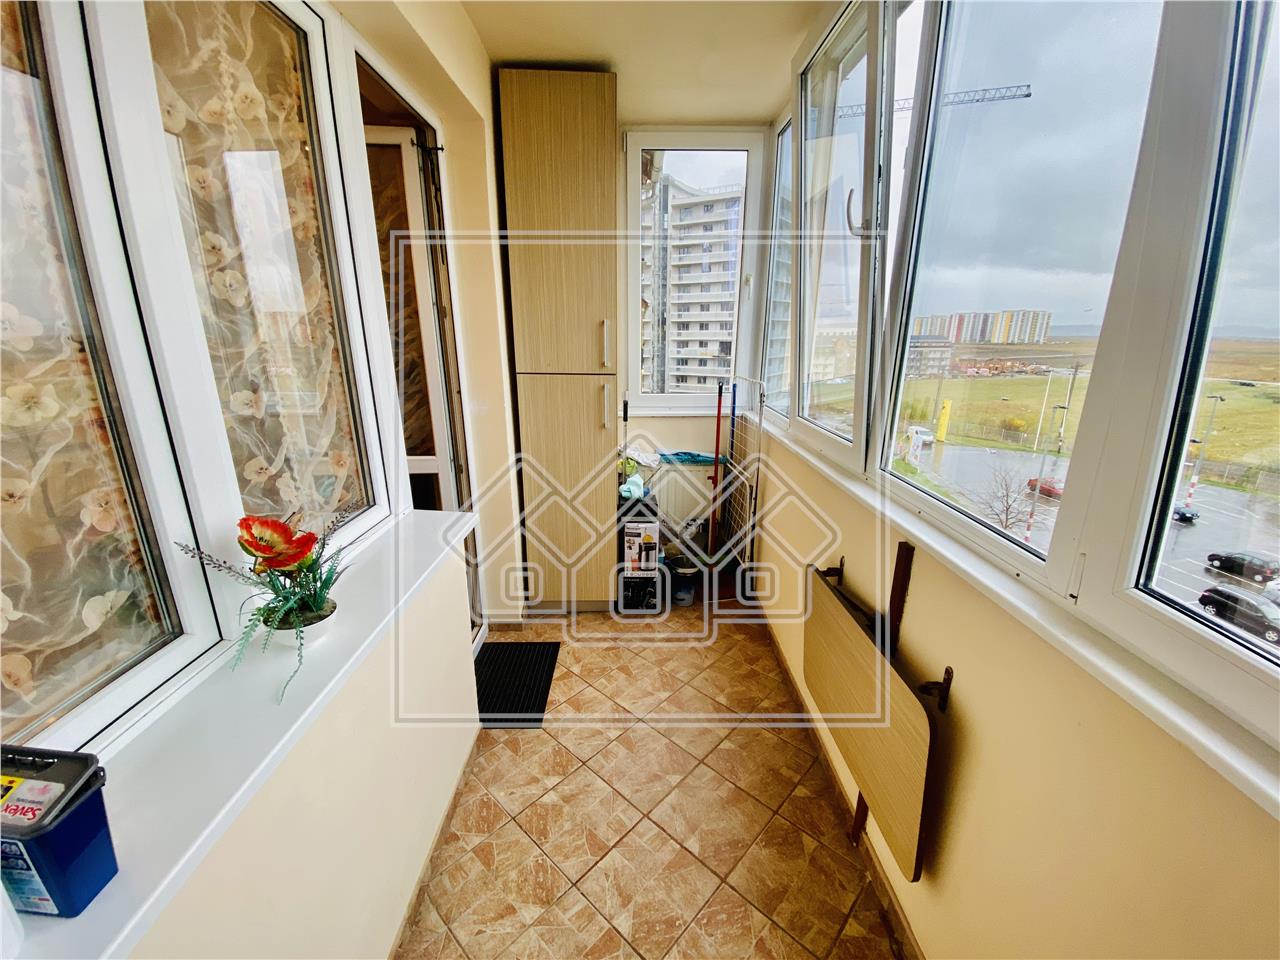 Apartament de vanzare in Sibiu - 3 camere si balcon - Zona Rahovei